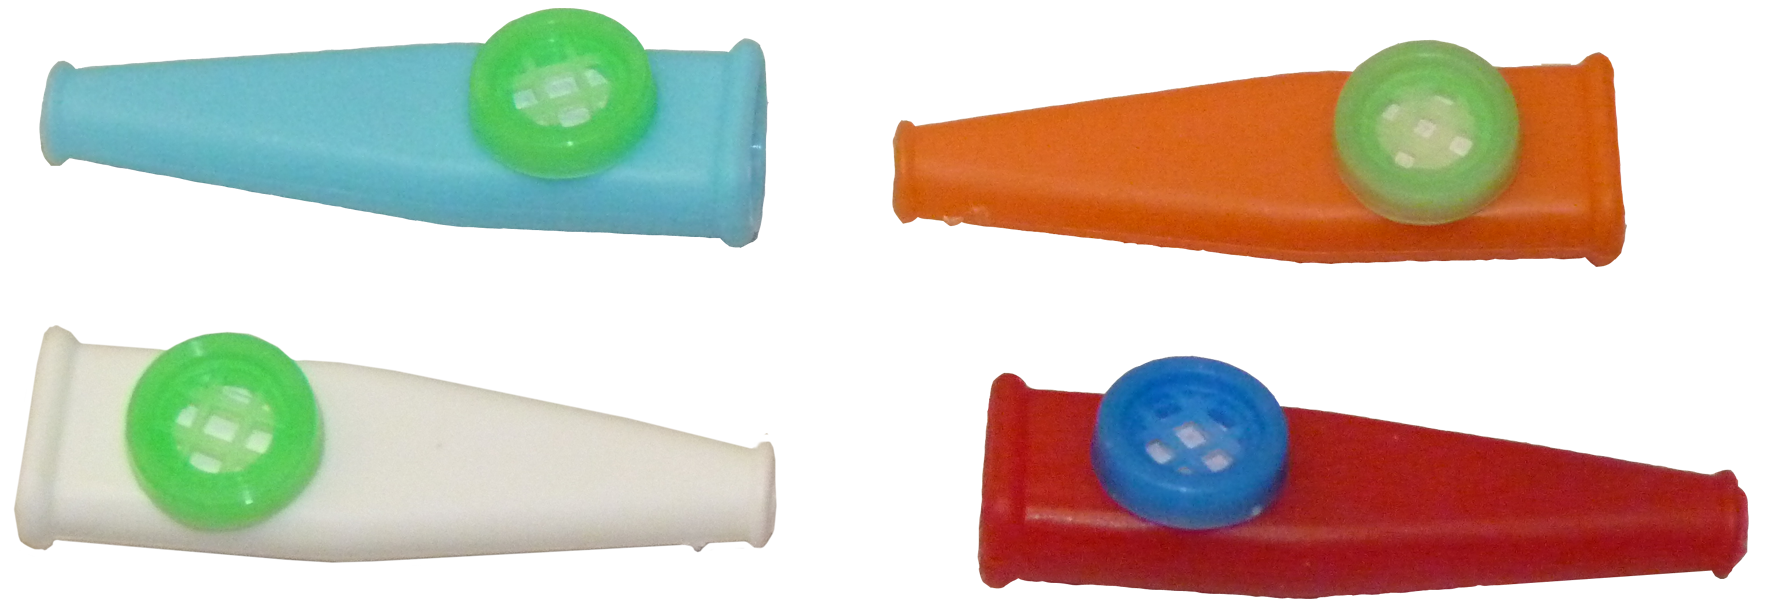 Baratijas de Pitos d Murga para cucañas y Piñatas infantiles